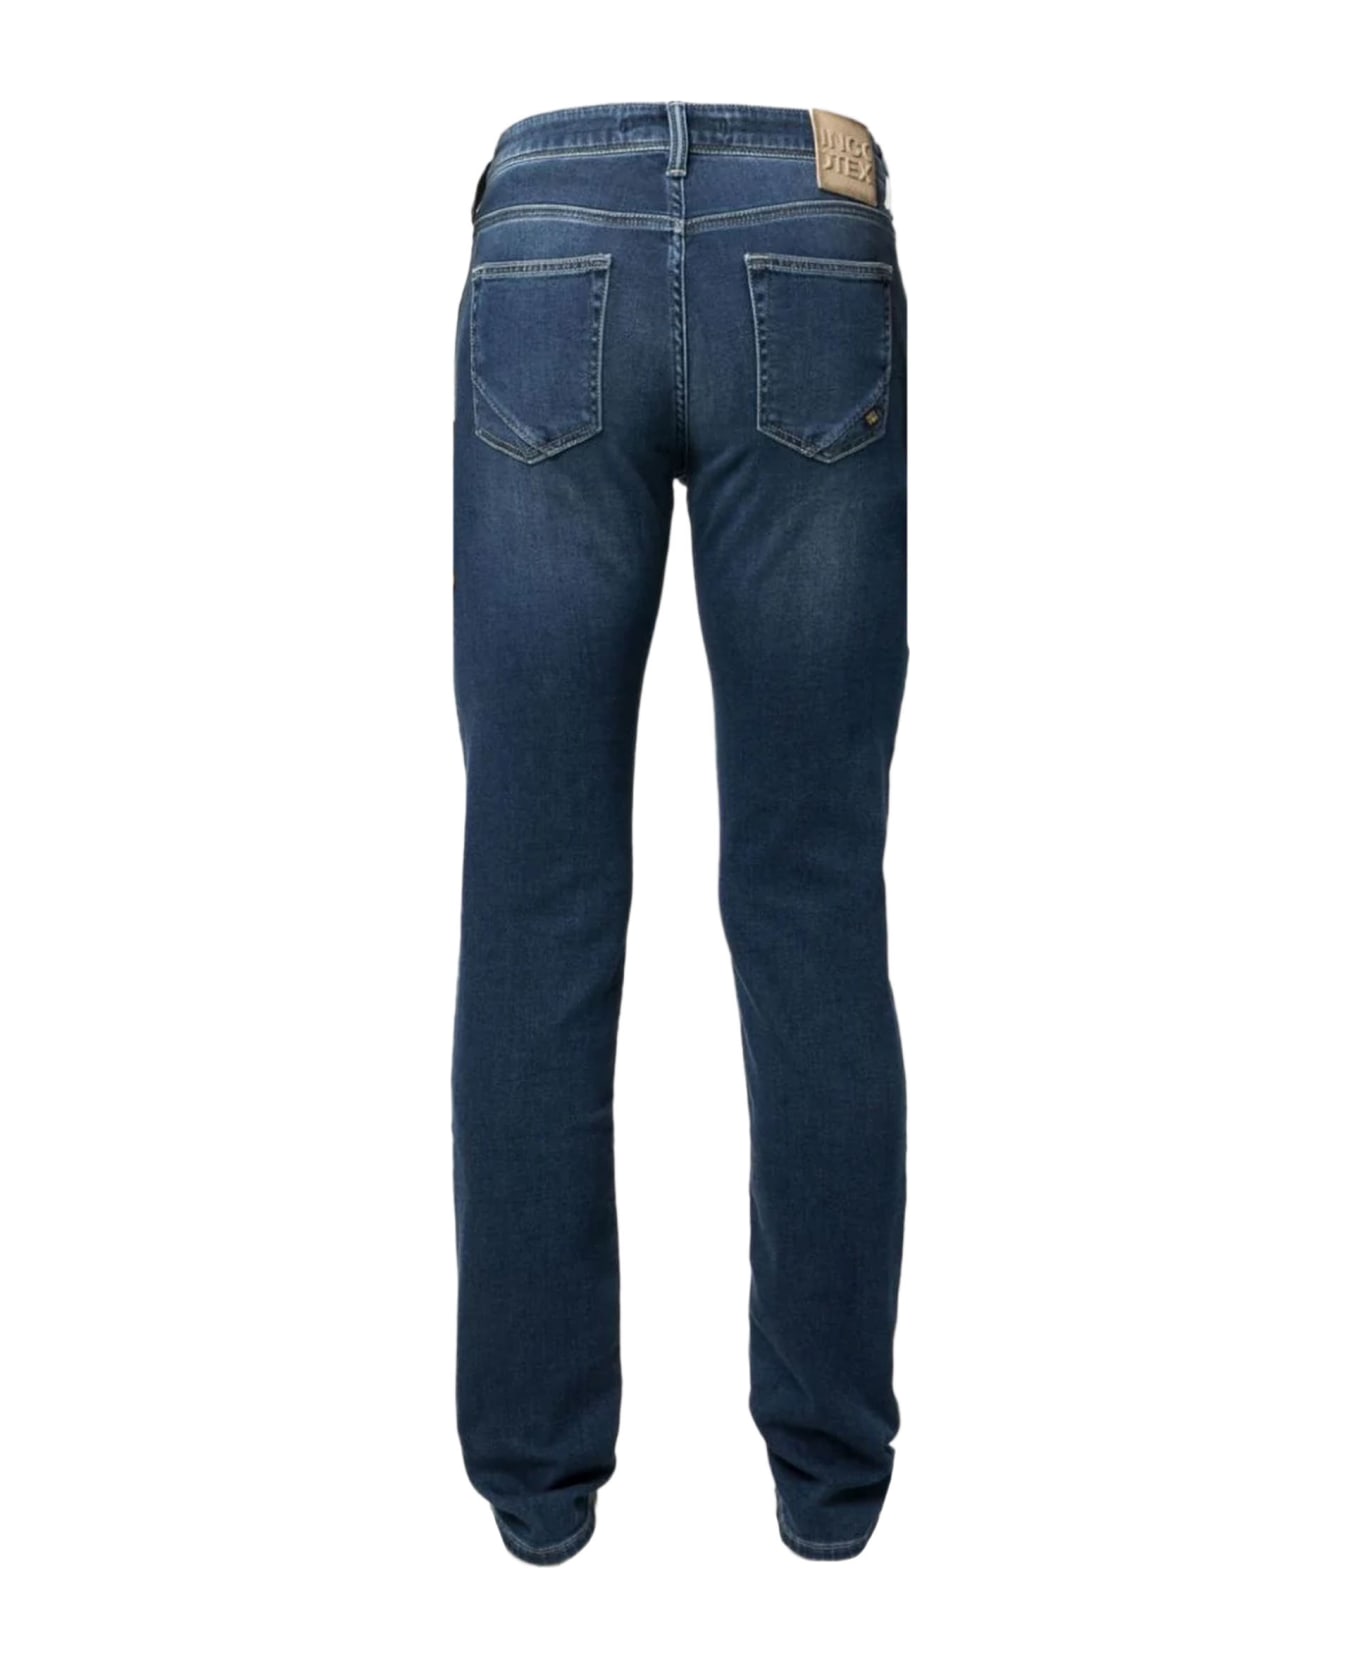 Incotex Indigo Blue Stretch-cotton Denim Jeans - Blue